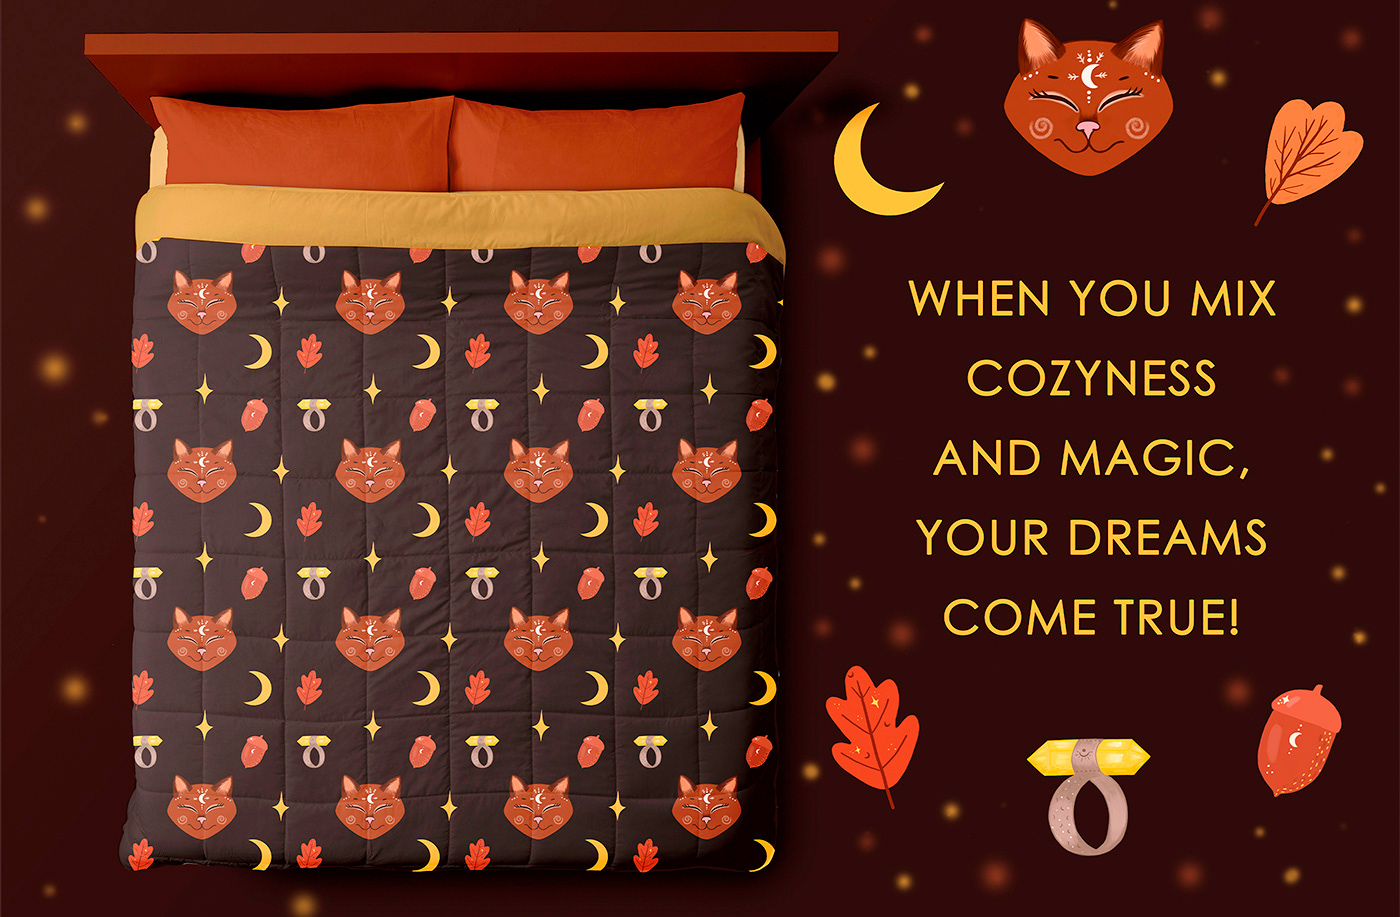 bedding design постельное белье  кошка Cat магия Magic   digital illustration art BEDDING COLLECTION